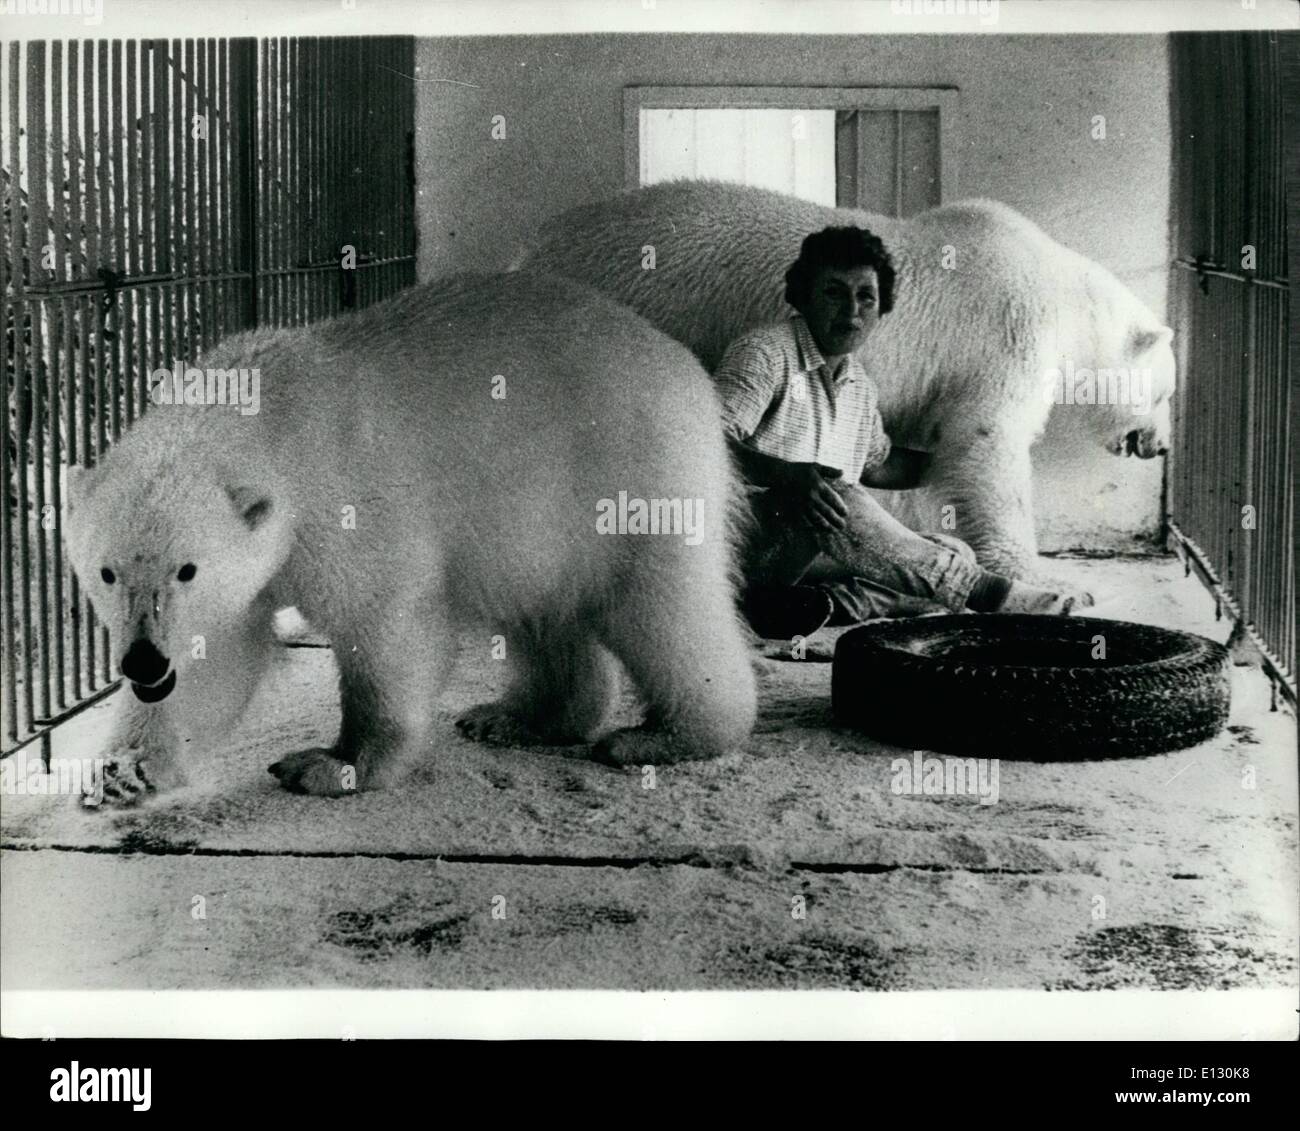 Le 26 février 2012 - Liliah Daniels célèbre actrice de cirque voulait s'installer avec son partenaire Britt Mari Mahran au Danemark, mais l'autorisation des autorités dépendantes de leur mettre leur 3 l'ours polaire dans le zoo qu'ils ont refusé Banque D'Images